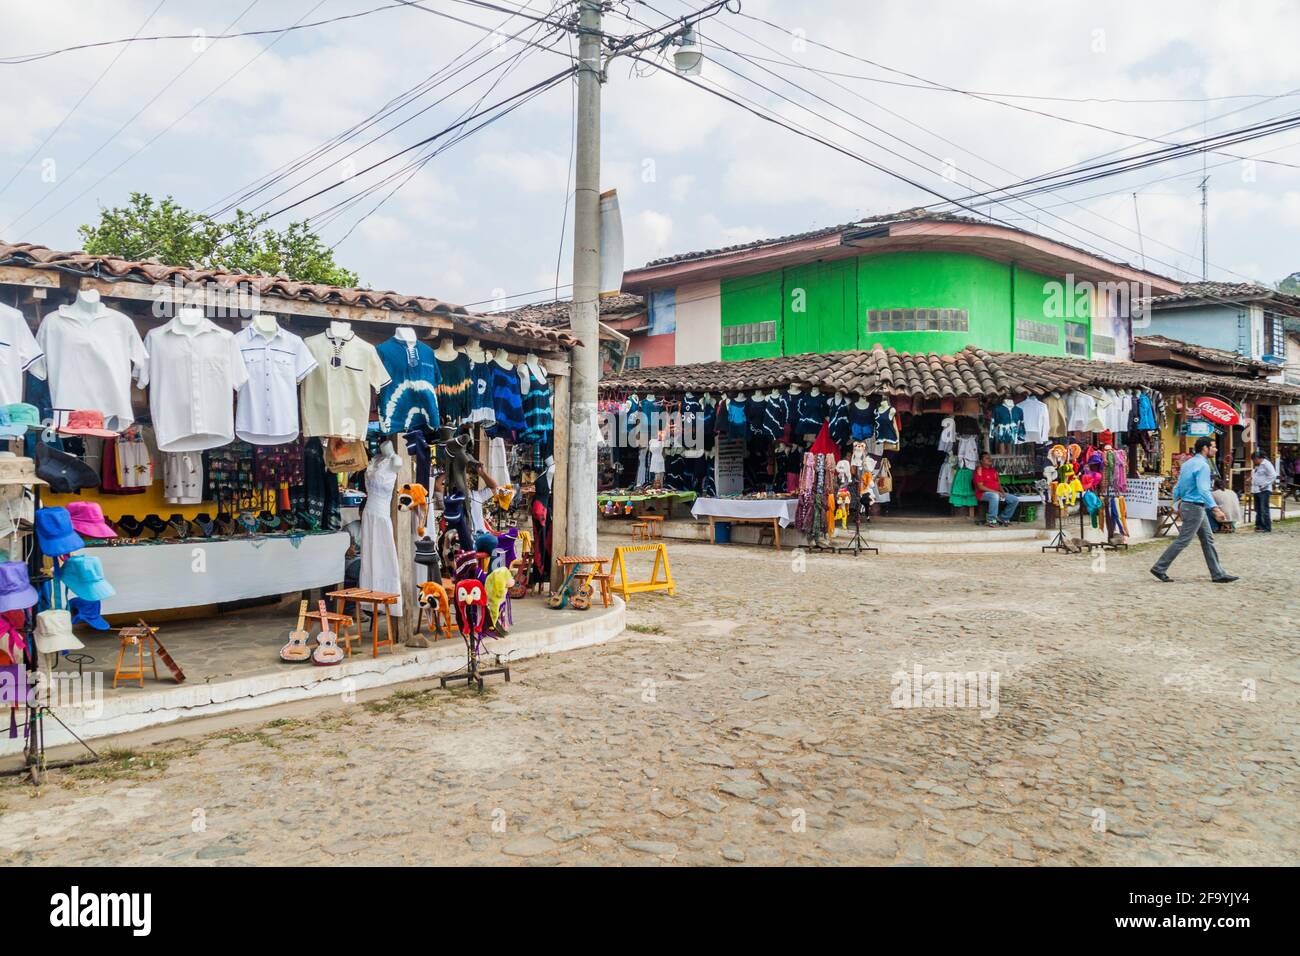 CONCEPCION DE ATACO, EL SALVADOR - 3 AVRIL 2016 : des étals de vêtements bordent les rues du village de Concepcion de Ataco. Banque D'Images